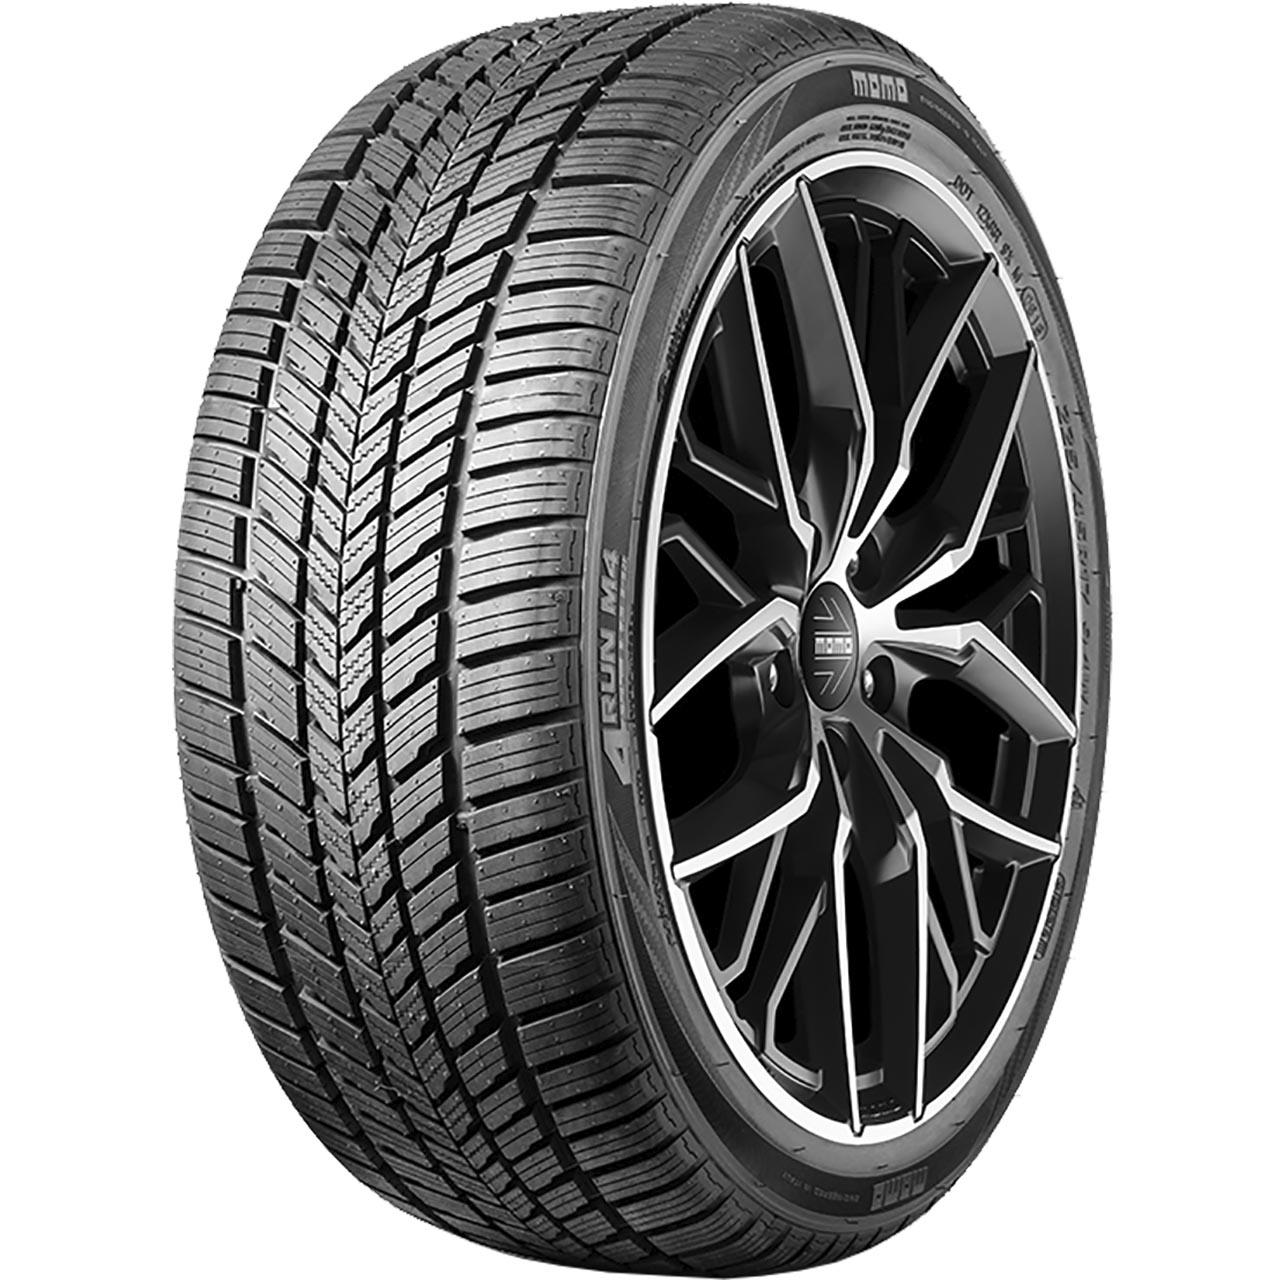 Momo Tire M 4 Four Season 155/80R13 79T